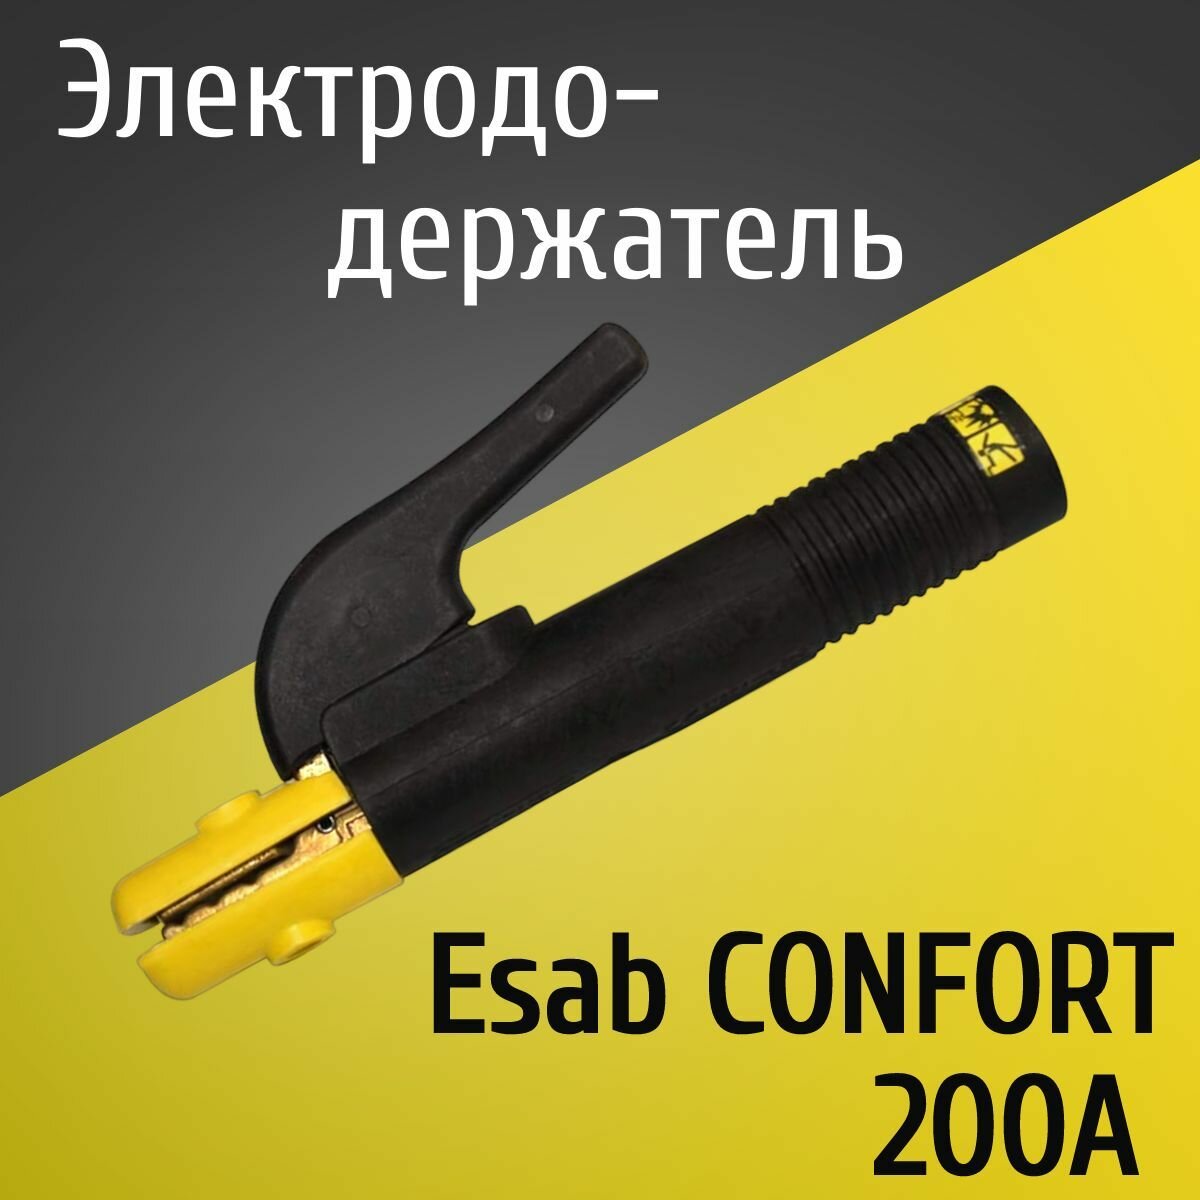 Электрододержатель, держатель для электрода, держак Esab CONFORT 200